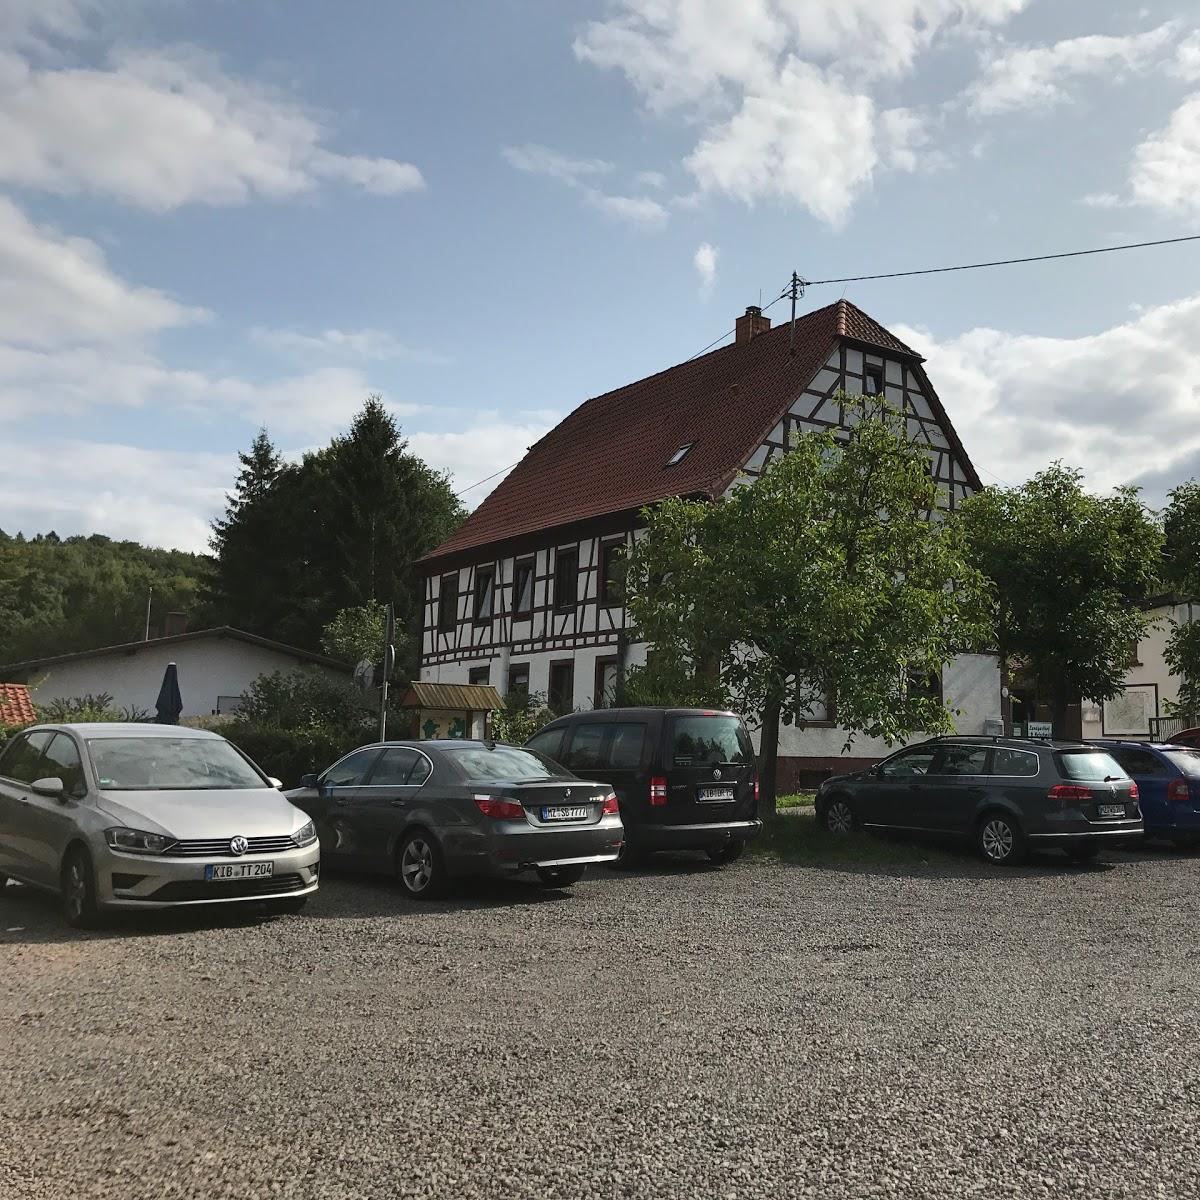 Restaurant "Landgasthof Hetschmühle" in Sippersfeld